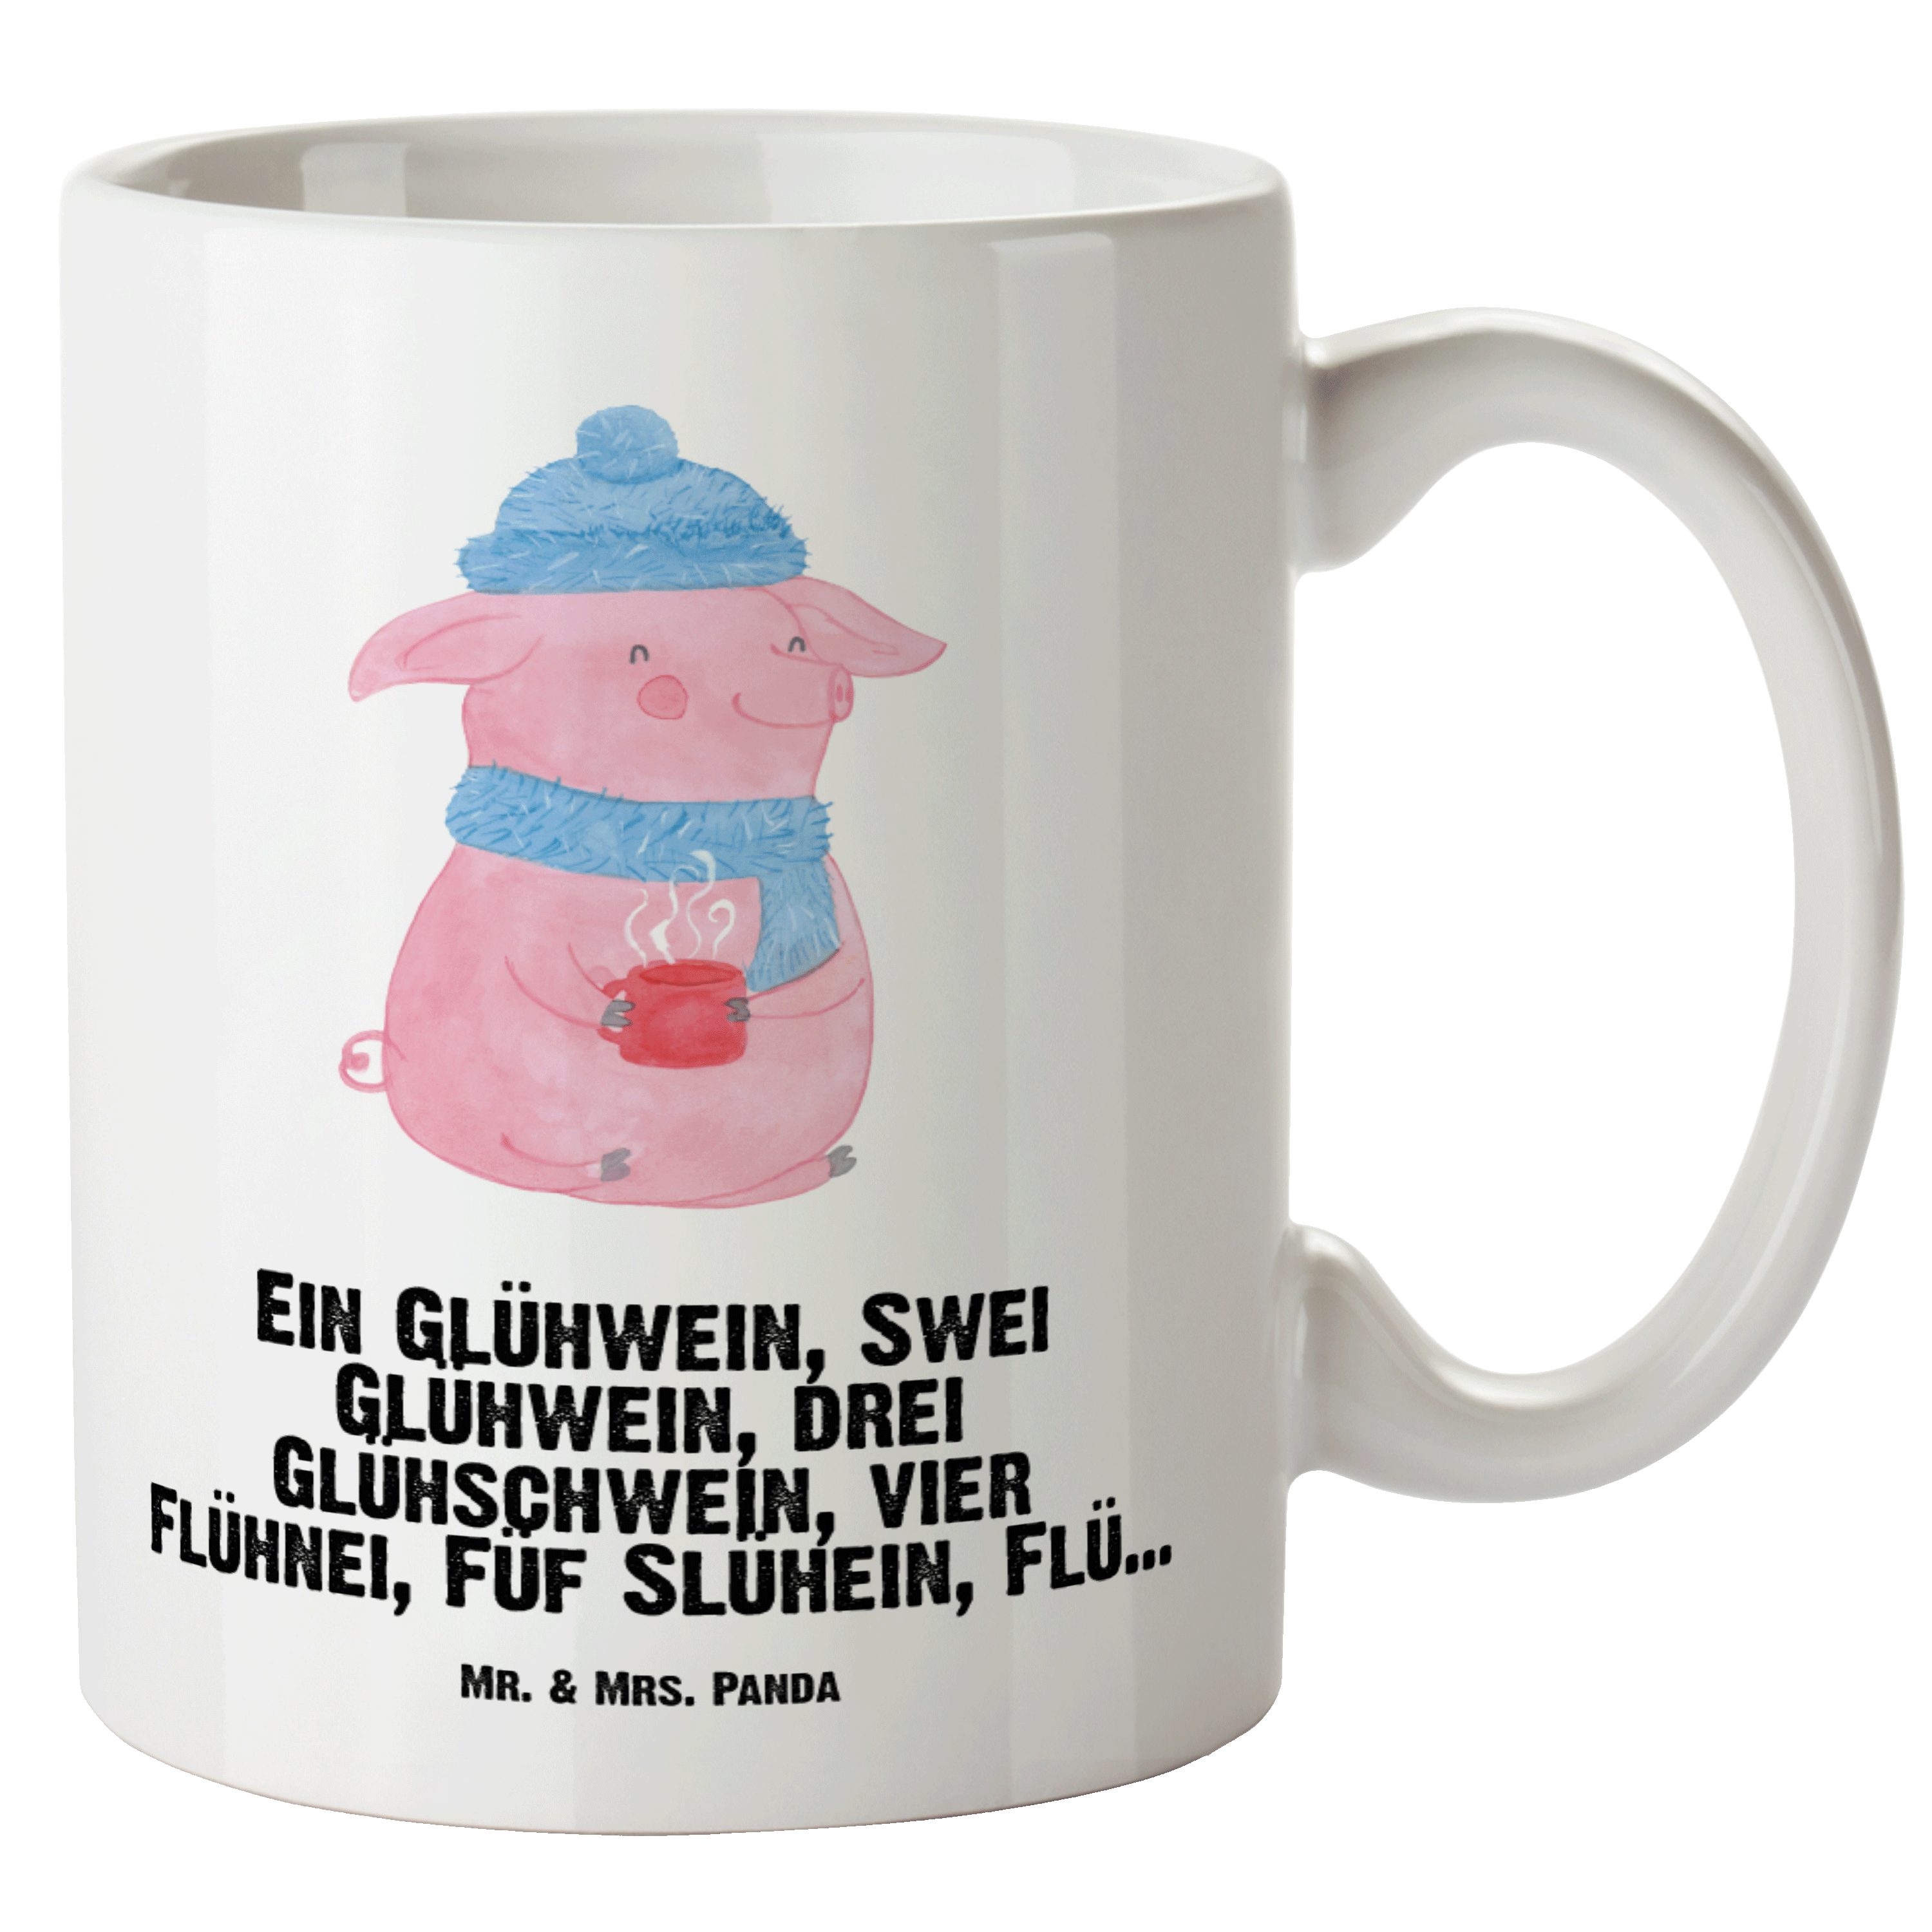 Mr. & Mrs. Panda Tasse Lallelndes Glühschwein - Weiß - Geschenk, Wintermotiv, Betrunken, Hei, XL Tasse Keramik